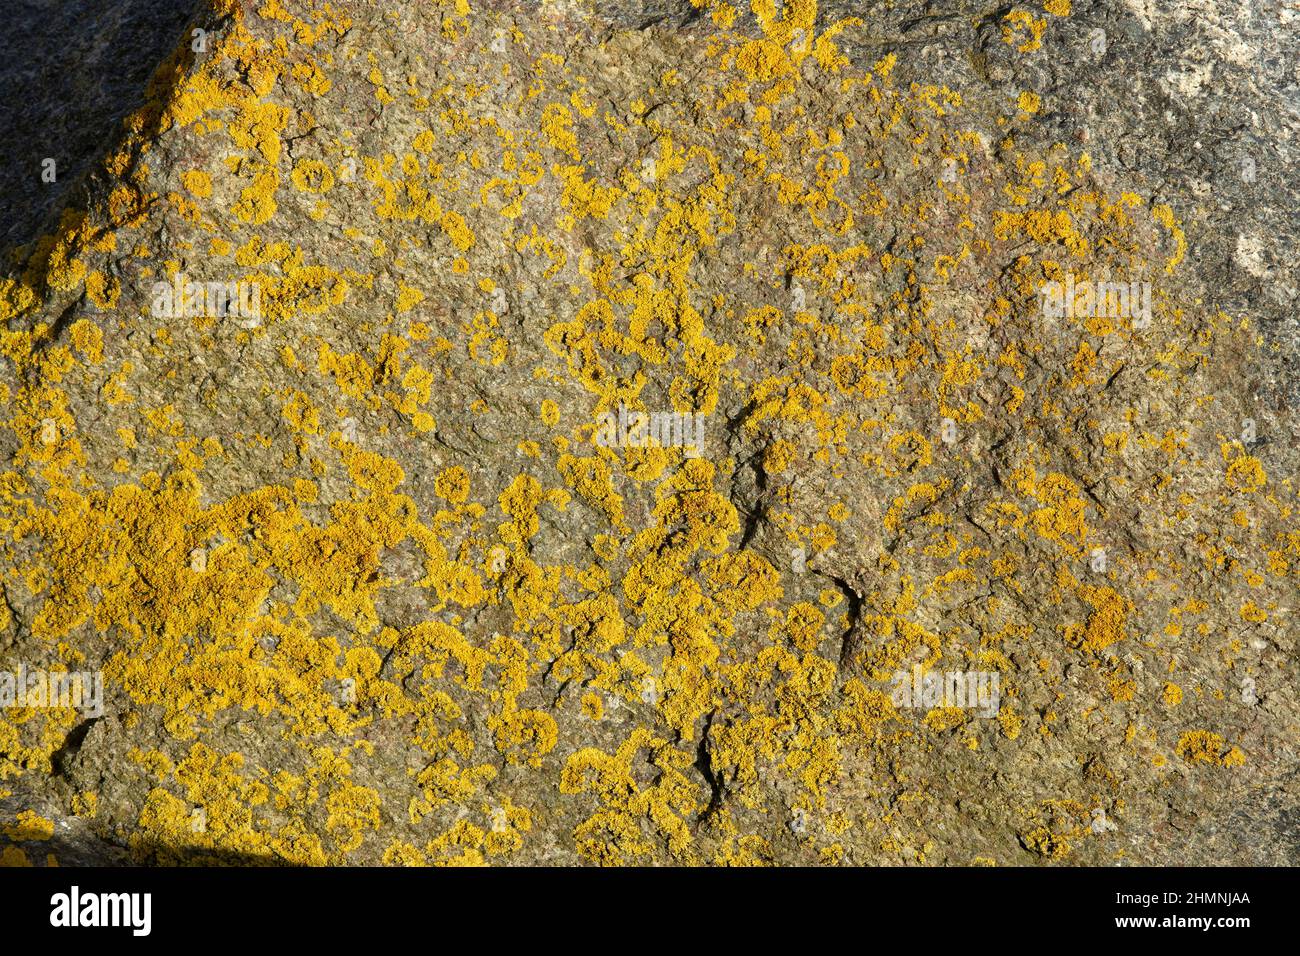 Il lichen della crosta d'oro è uno dei primi organismi aspro a colonizzare le coste. Essendo tollerante al sale può crescere appena sopra il segno di alta marea sopra Foto Stock